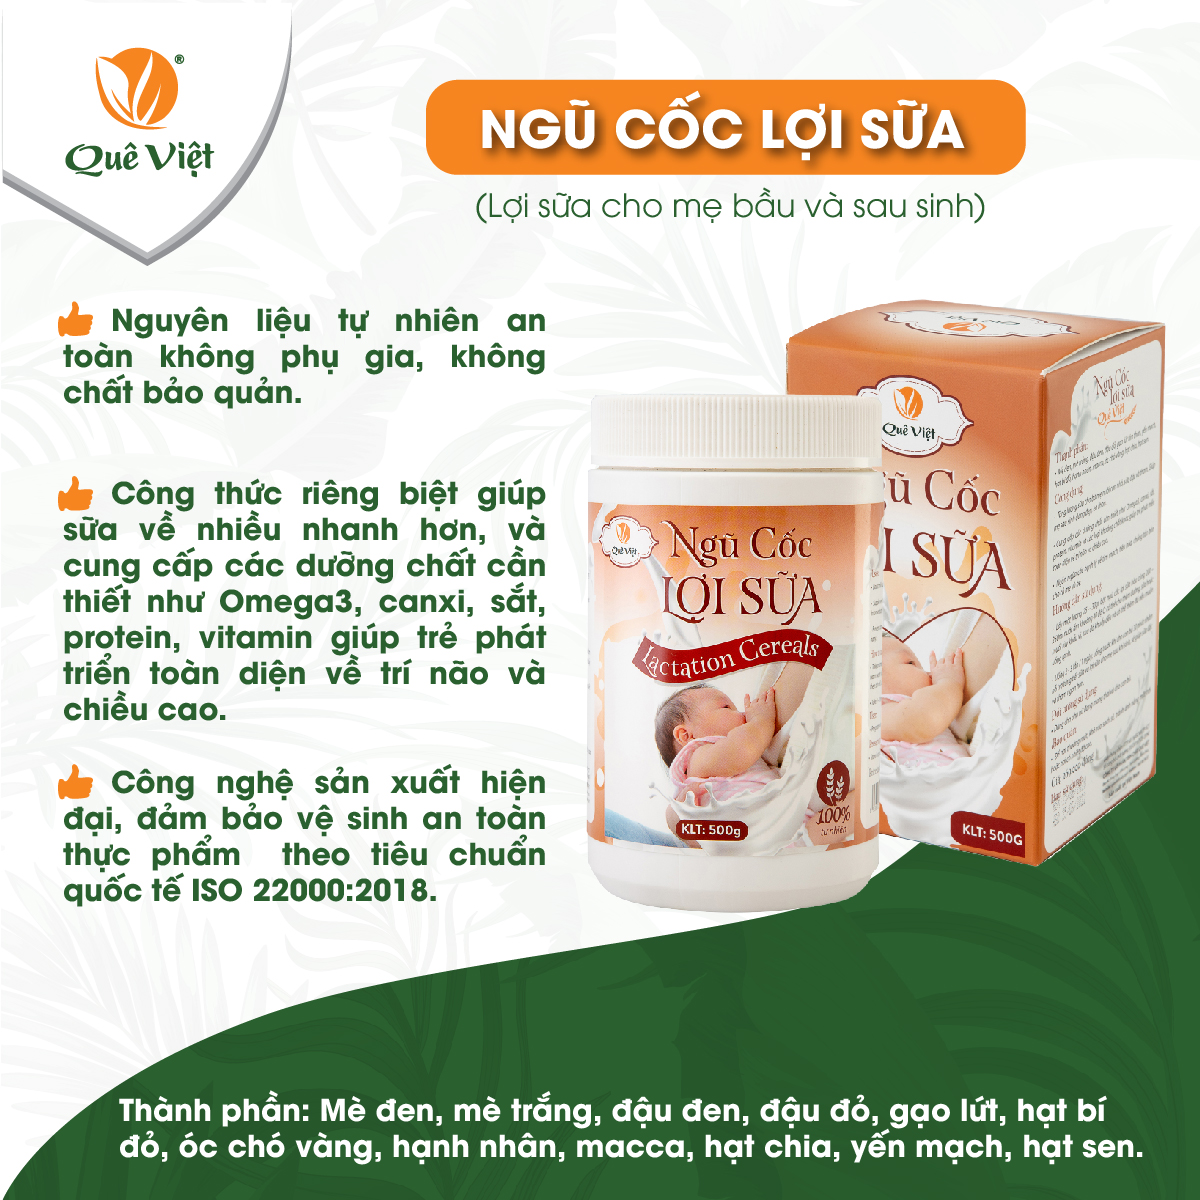 Ngũ cốc lợi sữa Quê Việt 100% nguyên liệu hữu cơ, sữa về nhiều, nhanh, bổ sung dinh dưỡng cho bé gói 100gr